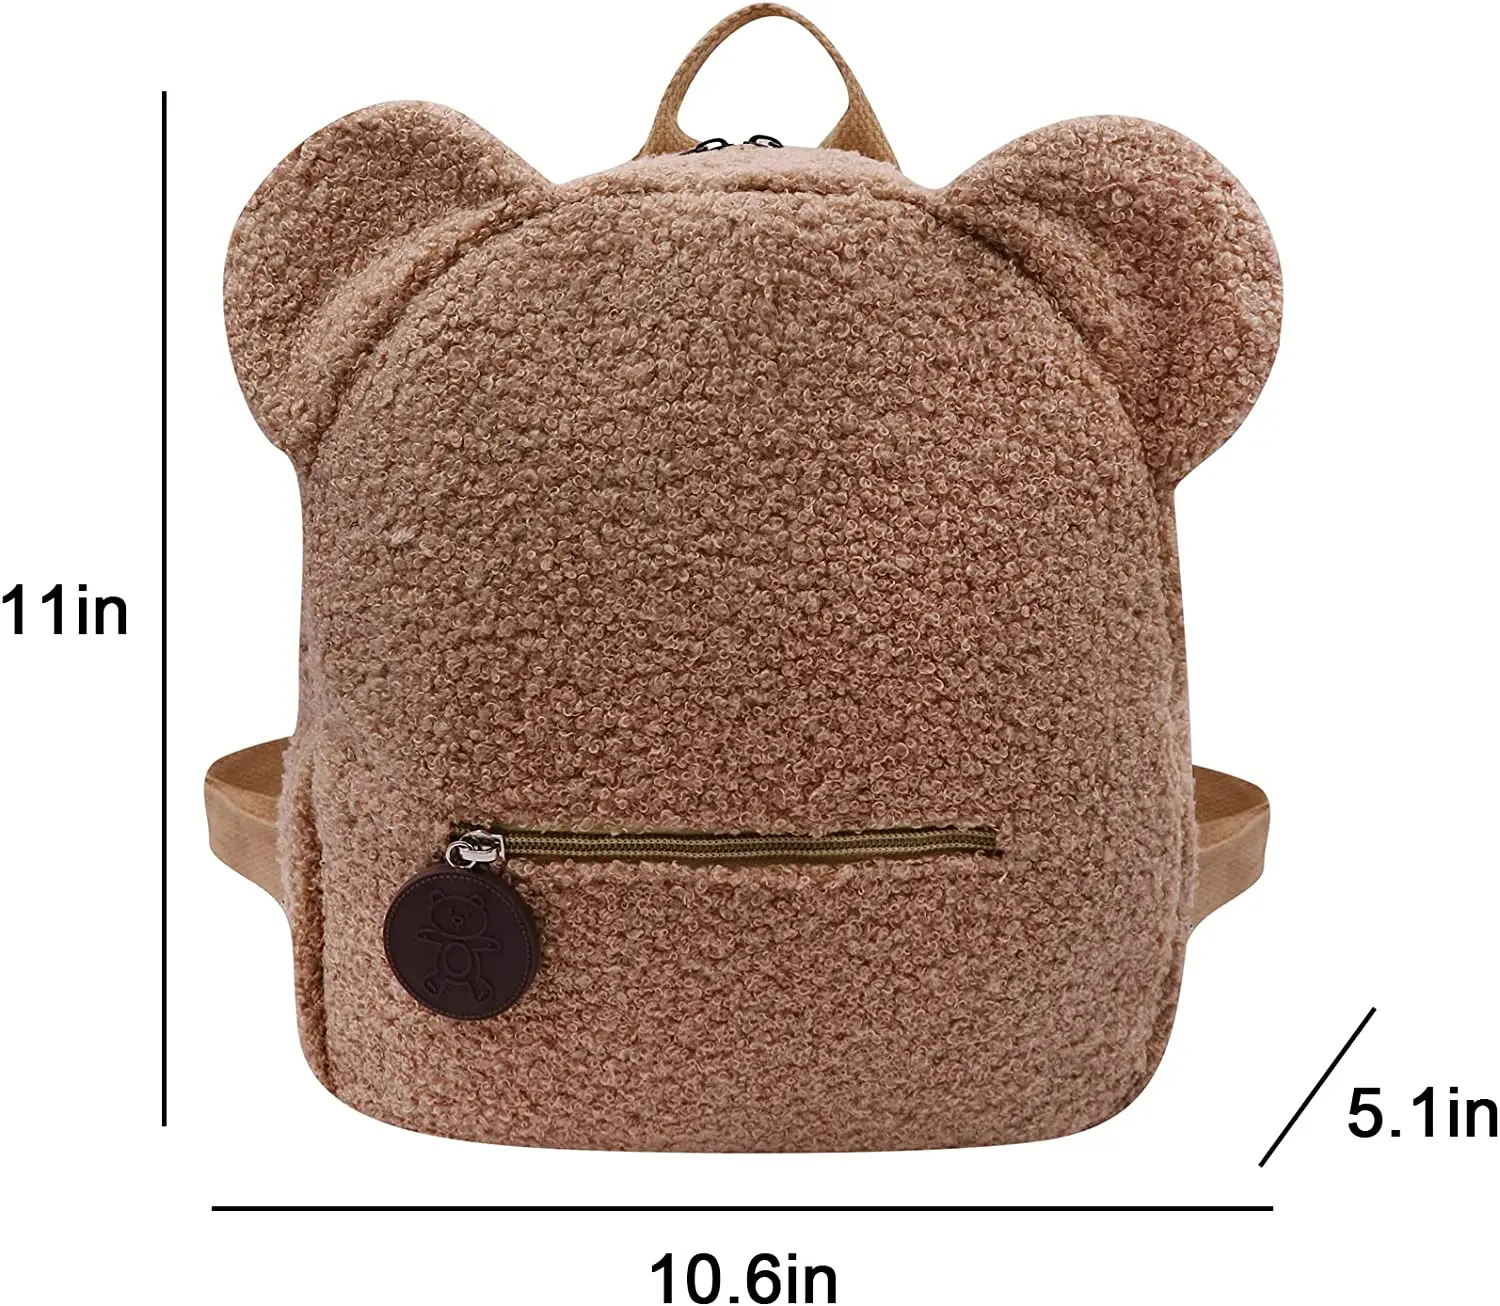 Персонализированная вышитая сумка-рюкзак для малышей, легкая сумка с плюшевым медведем, Детский рюкзак с пользовательским названием, подарок для мальчиков, девочек, дам - 4